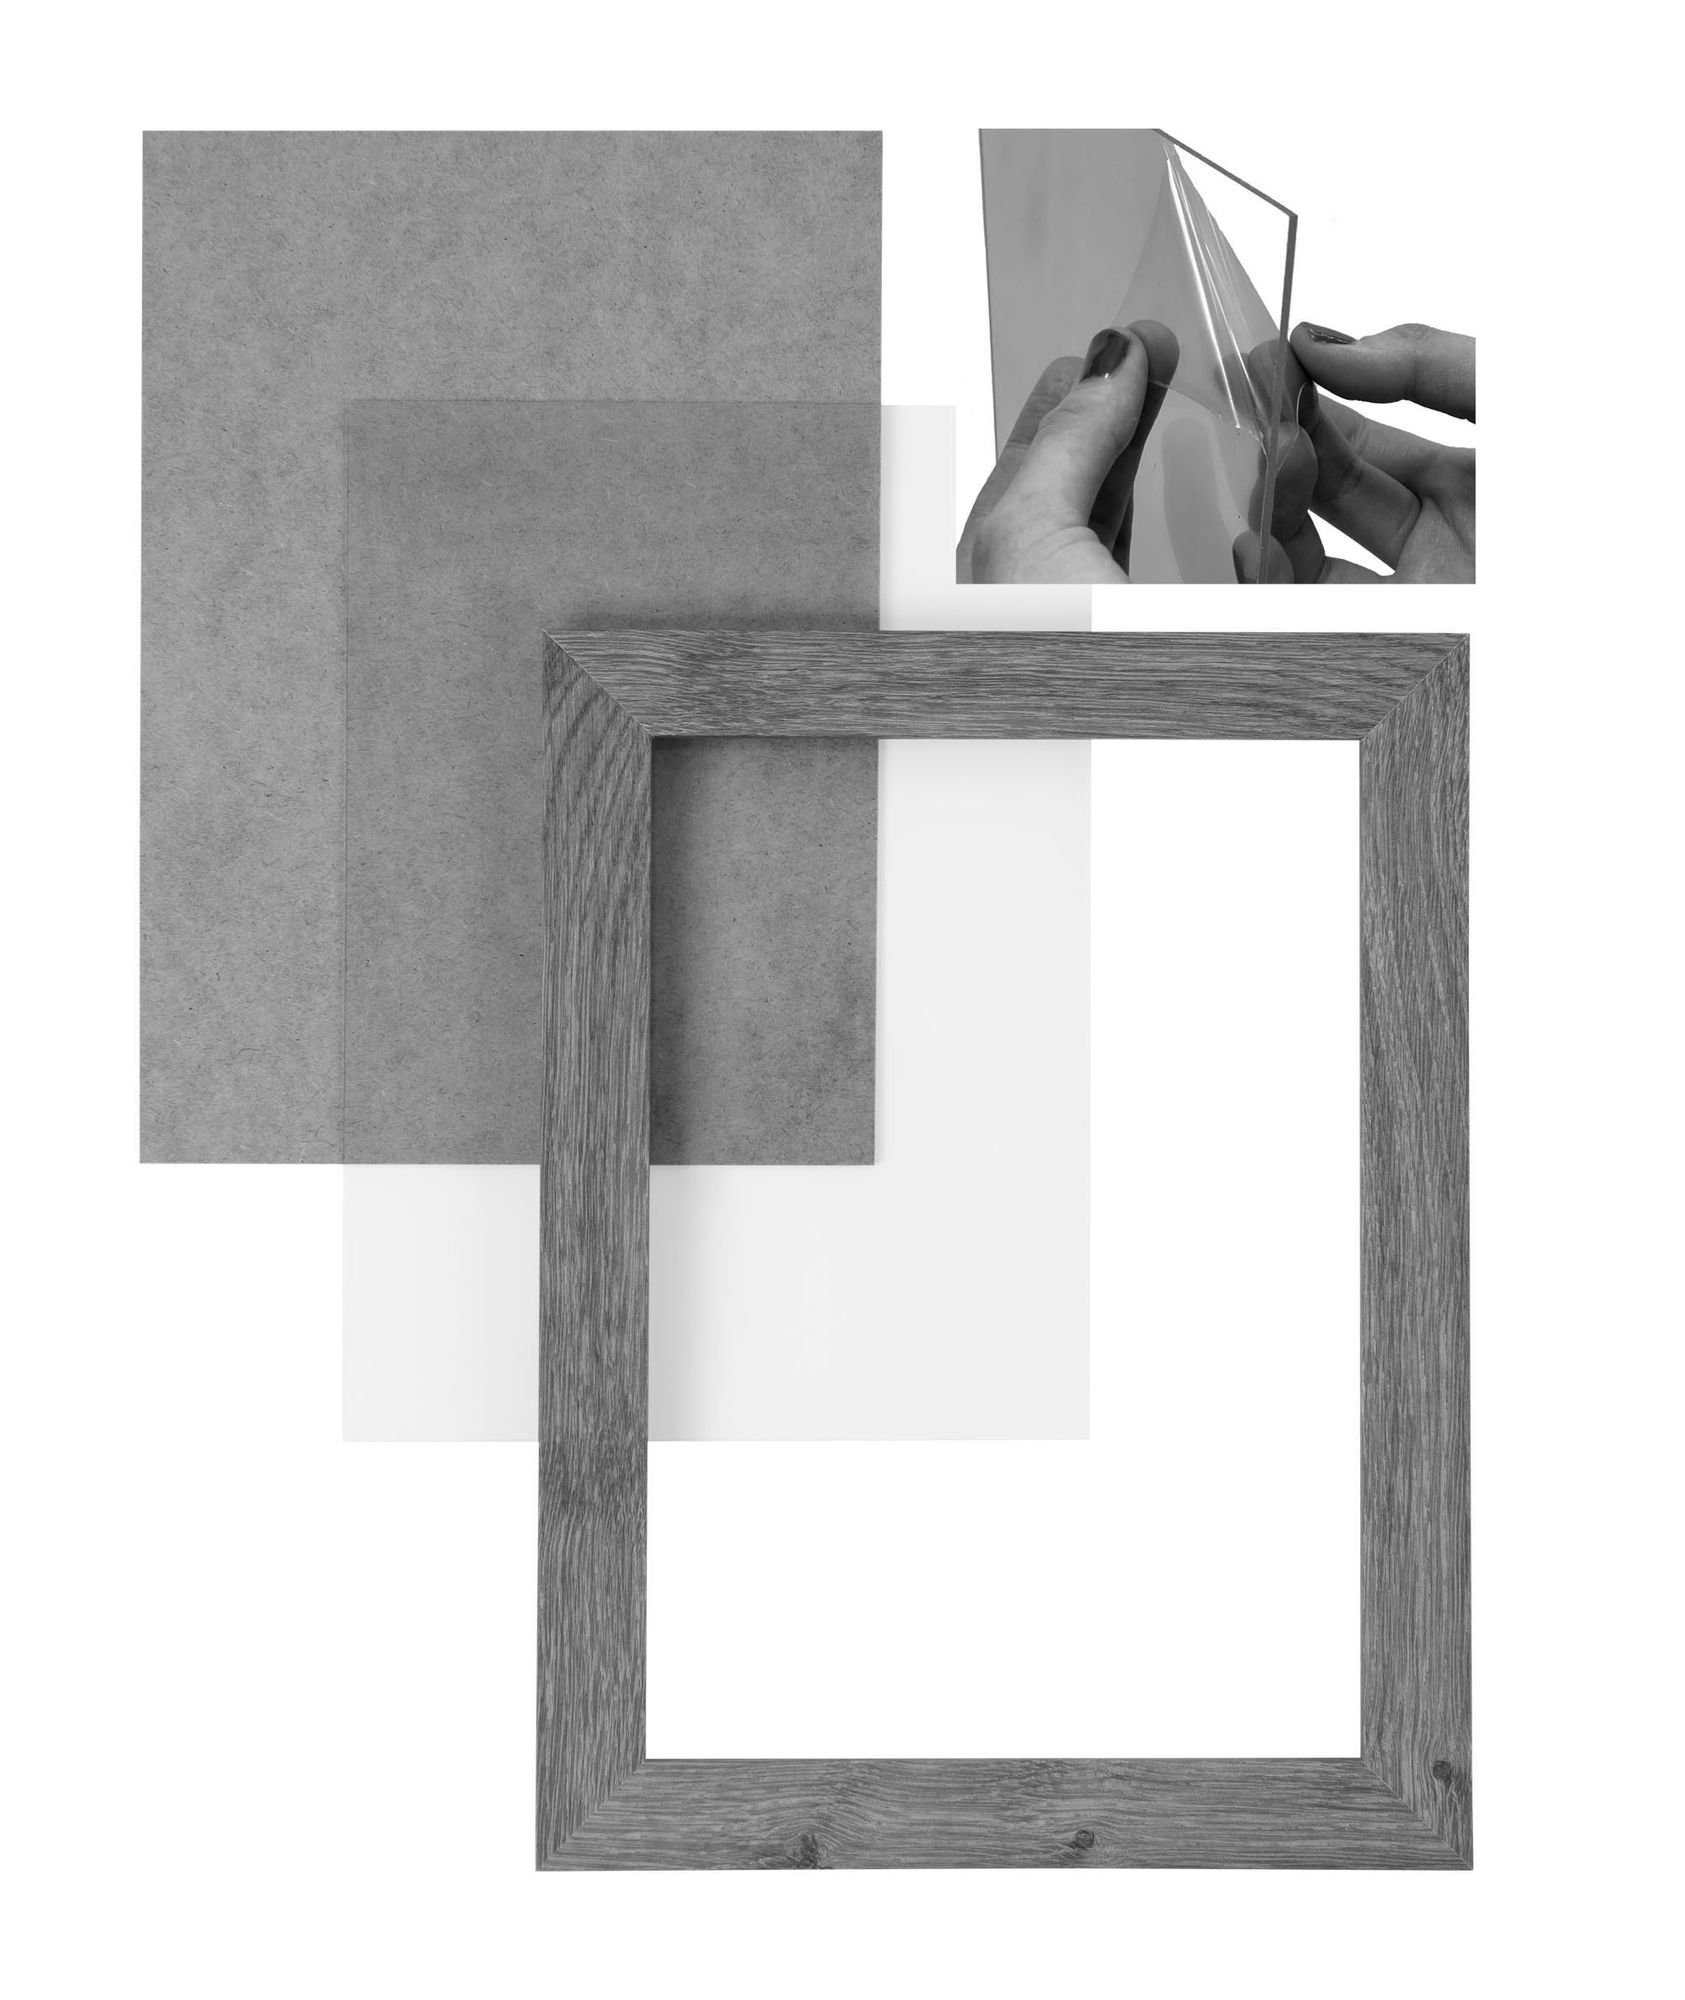 Maß Rückwand Holz nach Clamaro handgefertigt Acrylglas, eiche CLAMARO Bilderrahmen 'Collage' 50,8x71 inkl. eckiger FSC® Bilderrahmen MDF sonama Rahmen Moderner und in Aufhänger